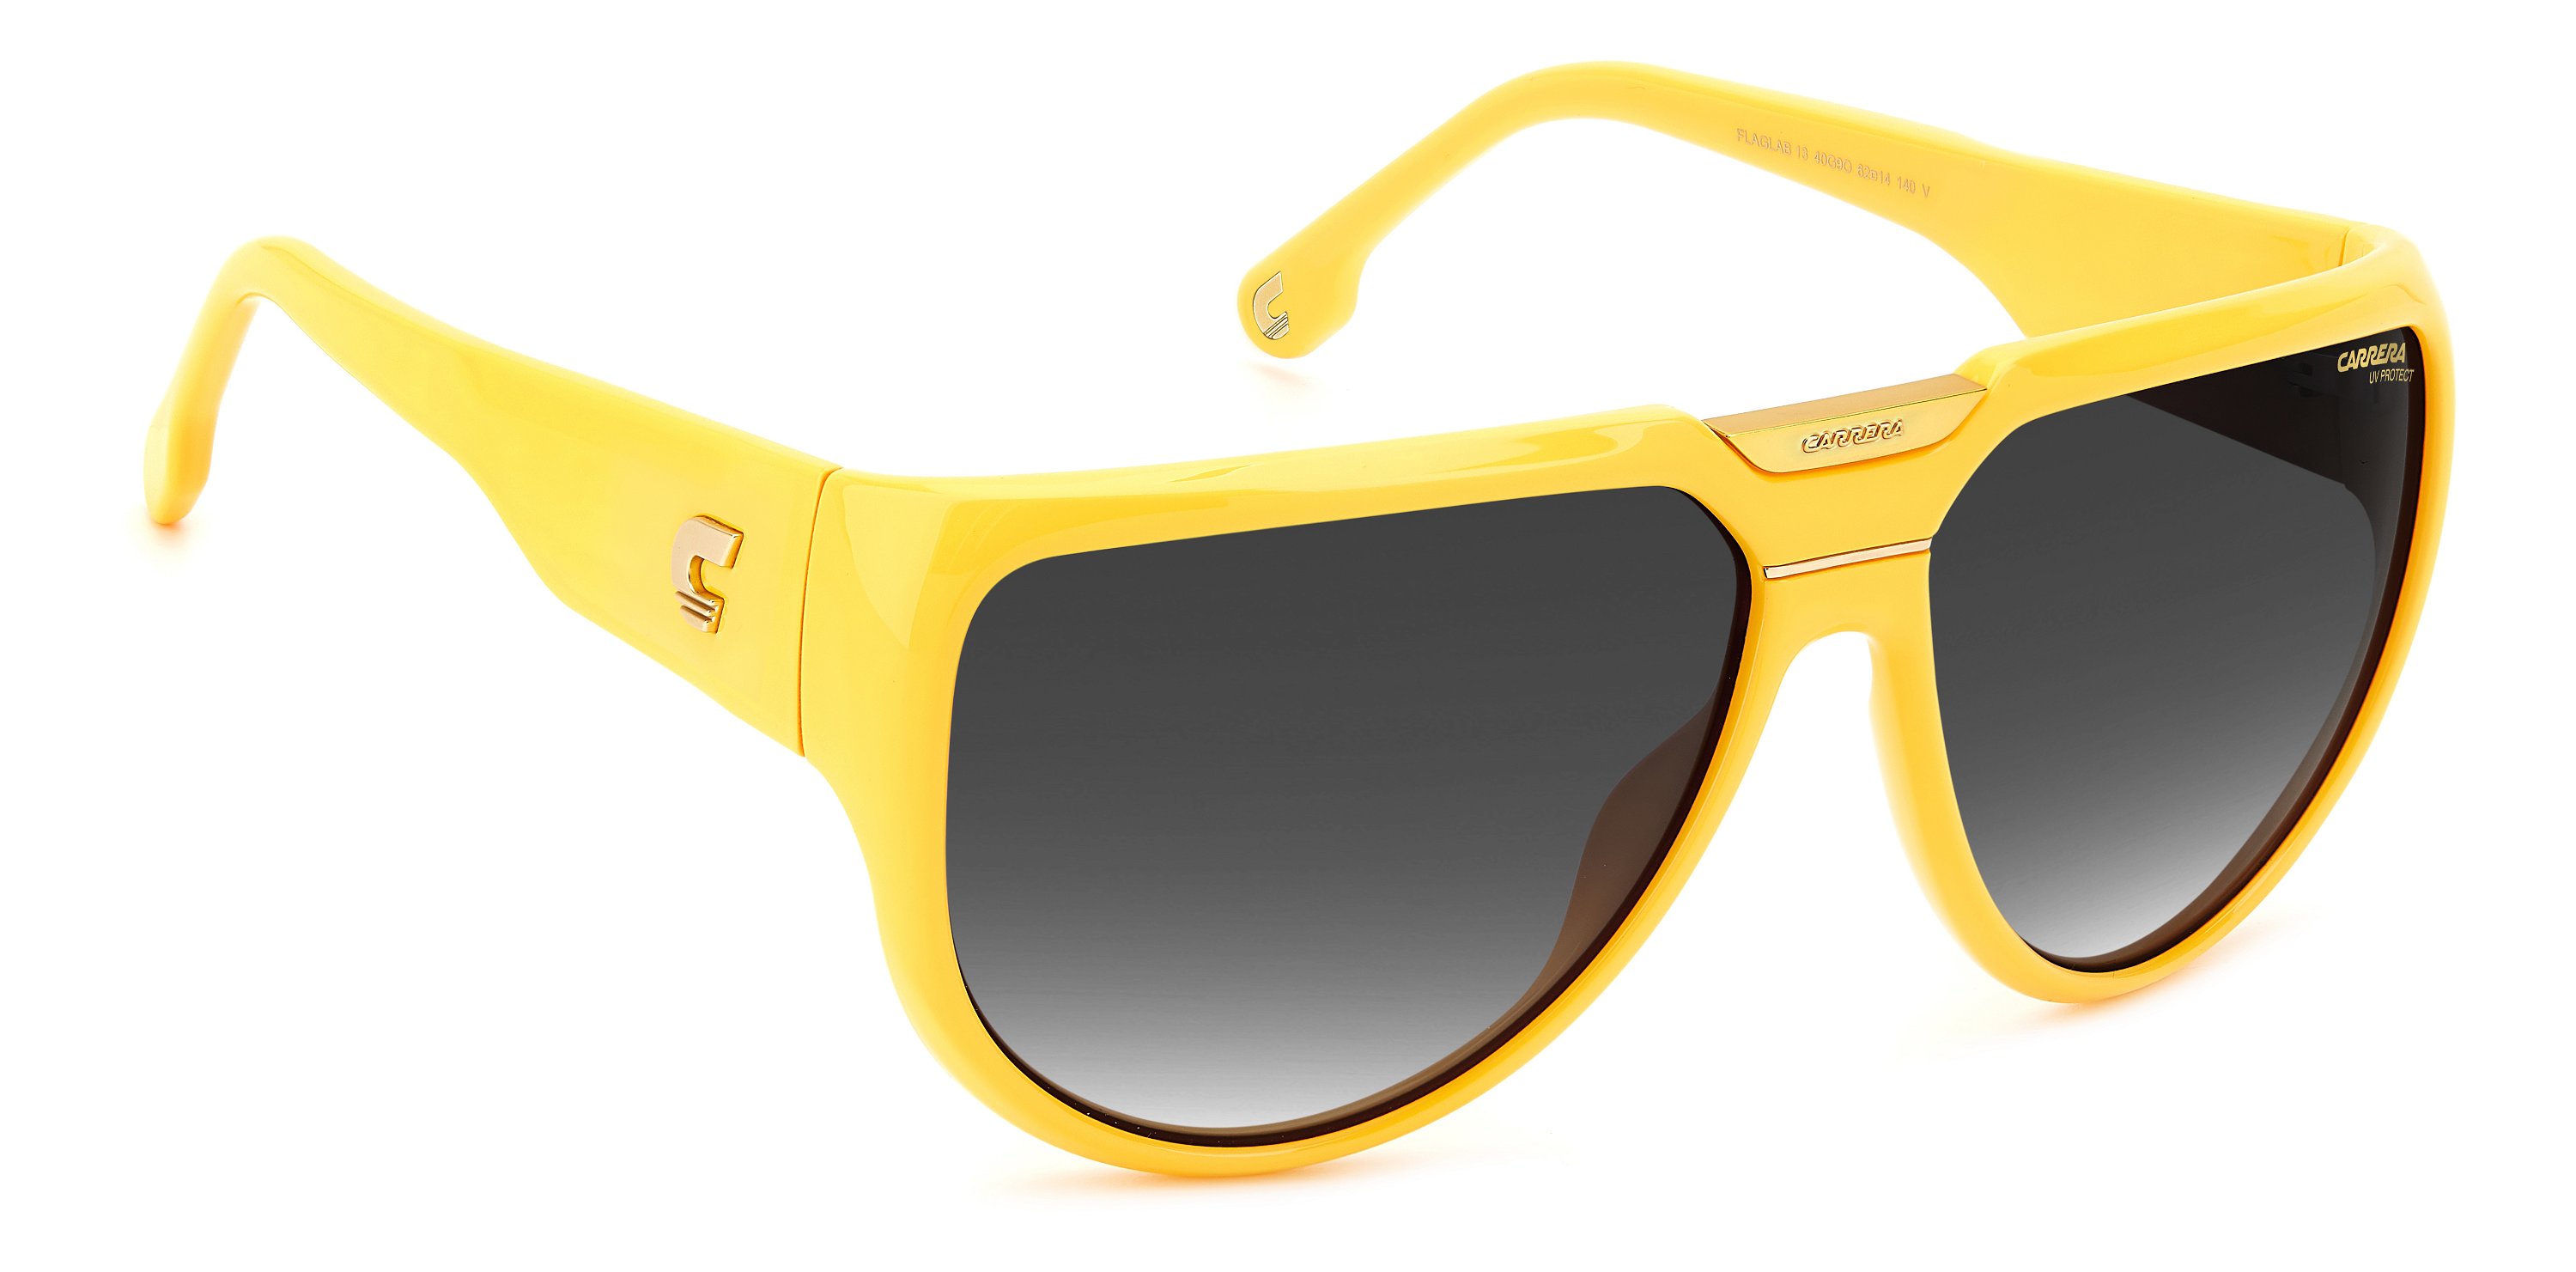 Carrera Sonnenbrille FLAGLAB 13 40G gelb